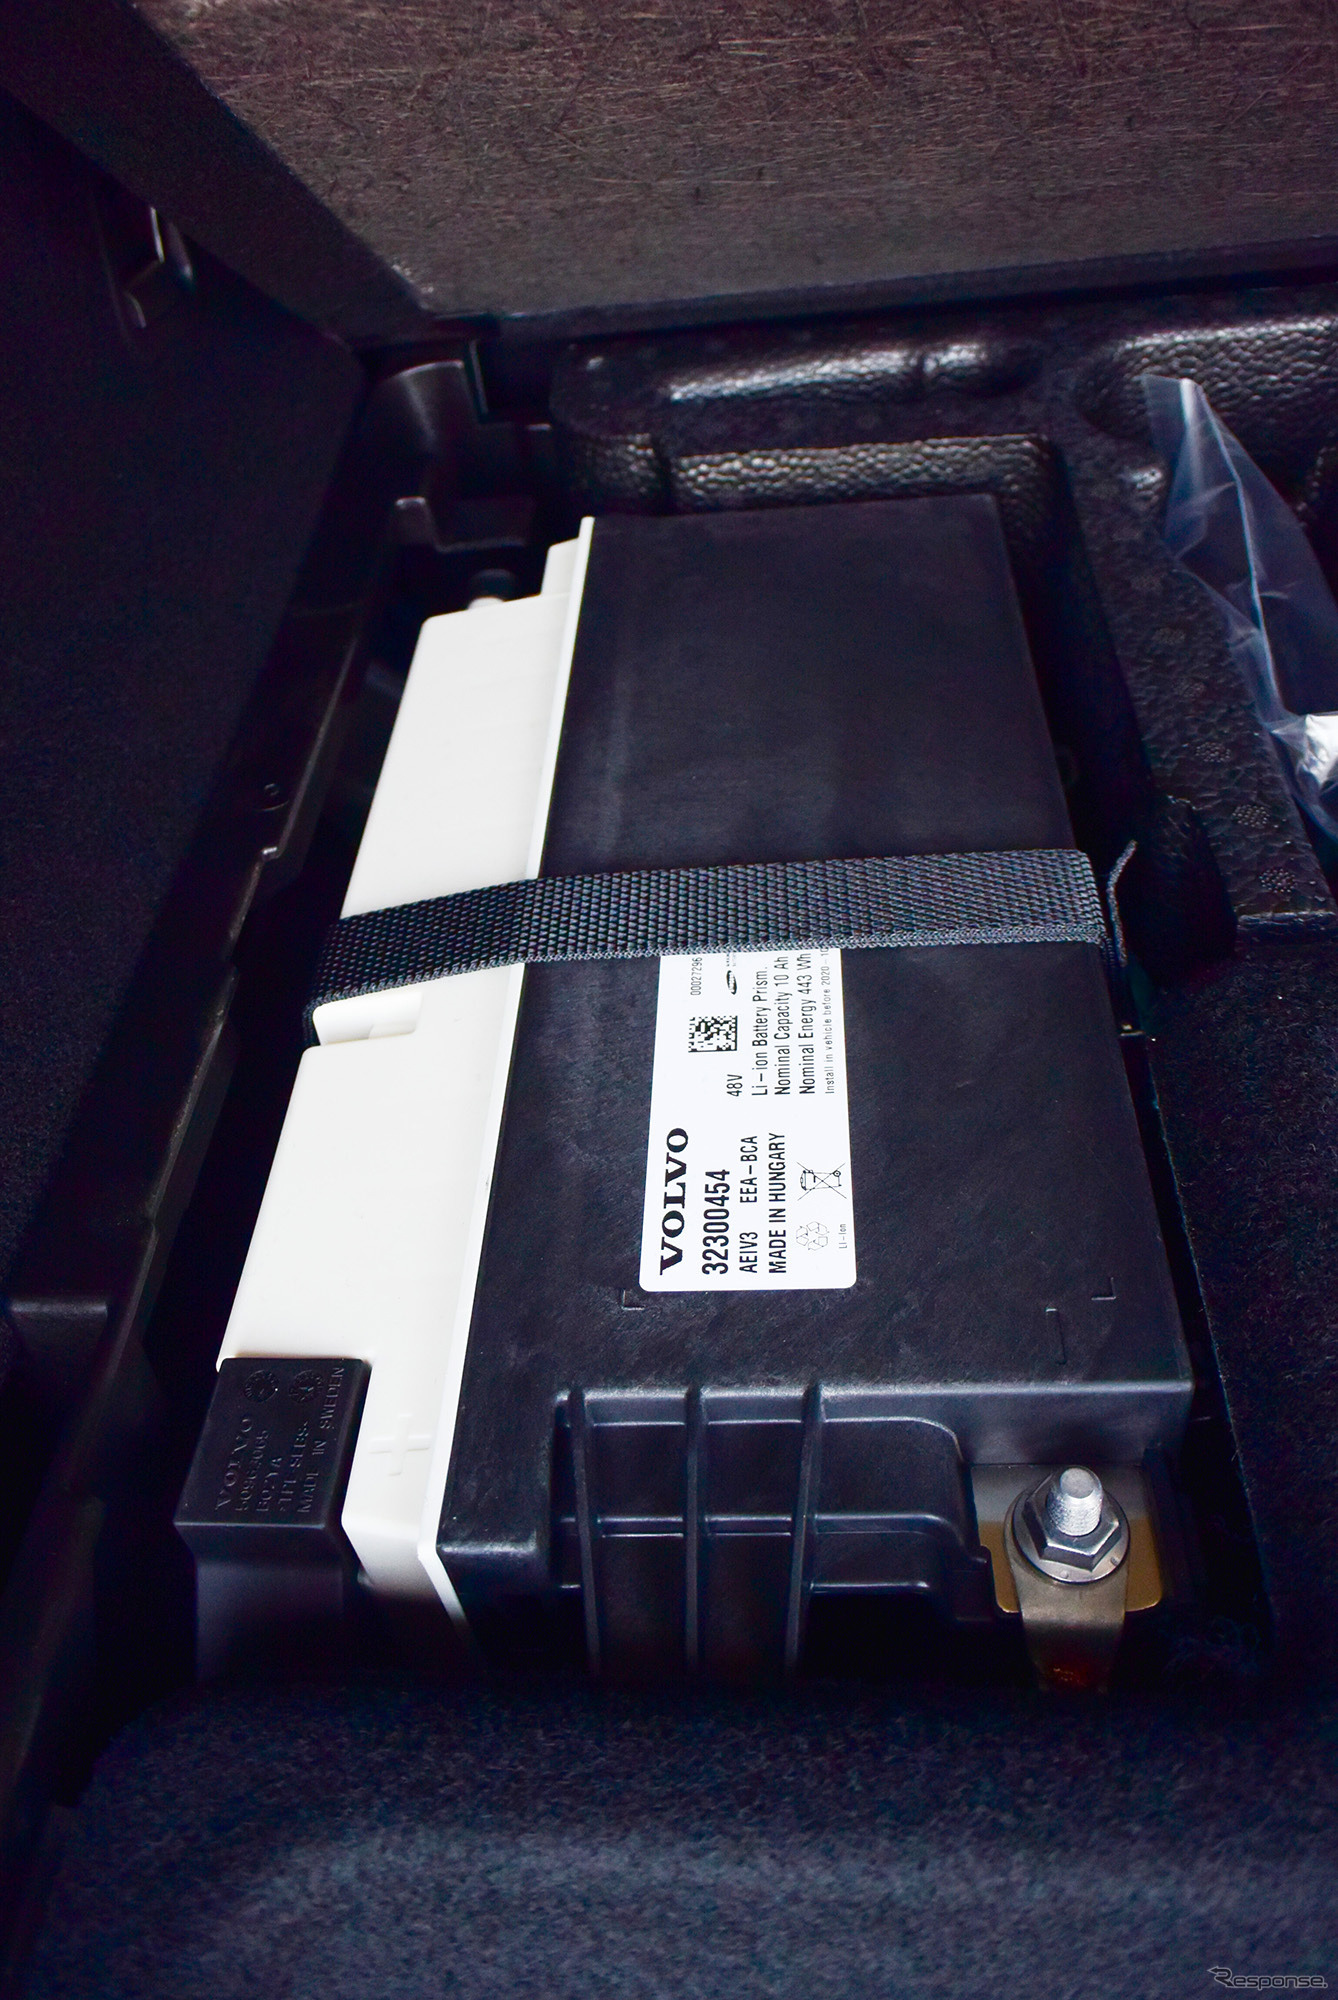 ボルボ XC90 B5 Momentumの48Vハイブリッドの電源を構成するリチウムイオン電池。電池パックのサイズは普通の鉛バッテリーの大容量品と大して変わらない。